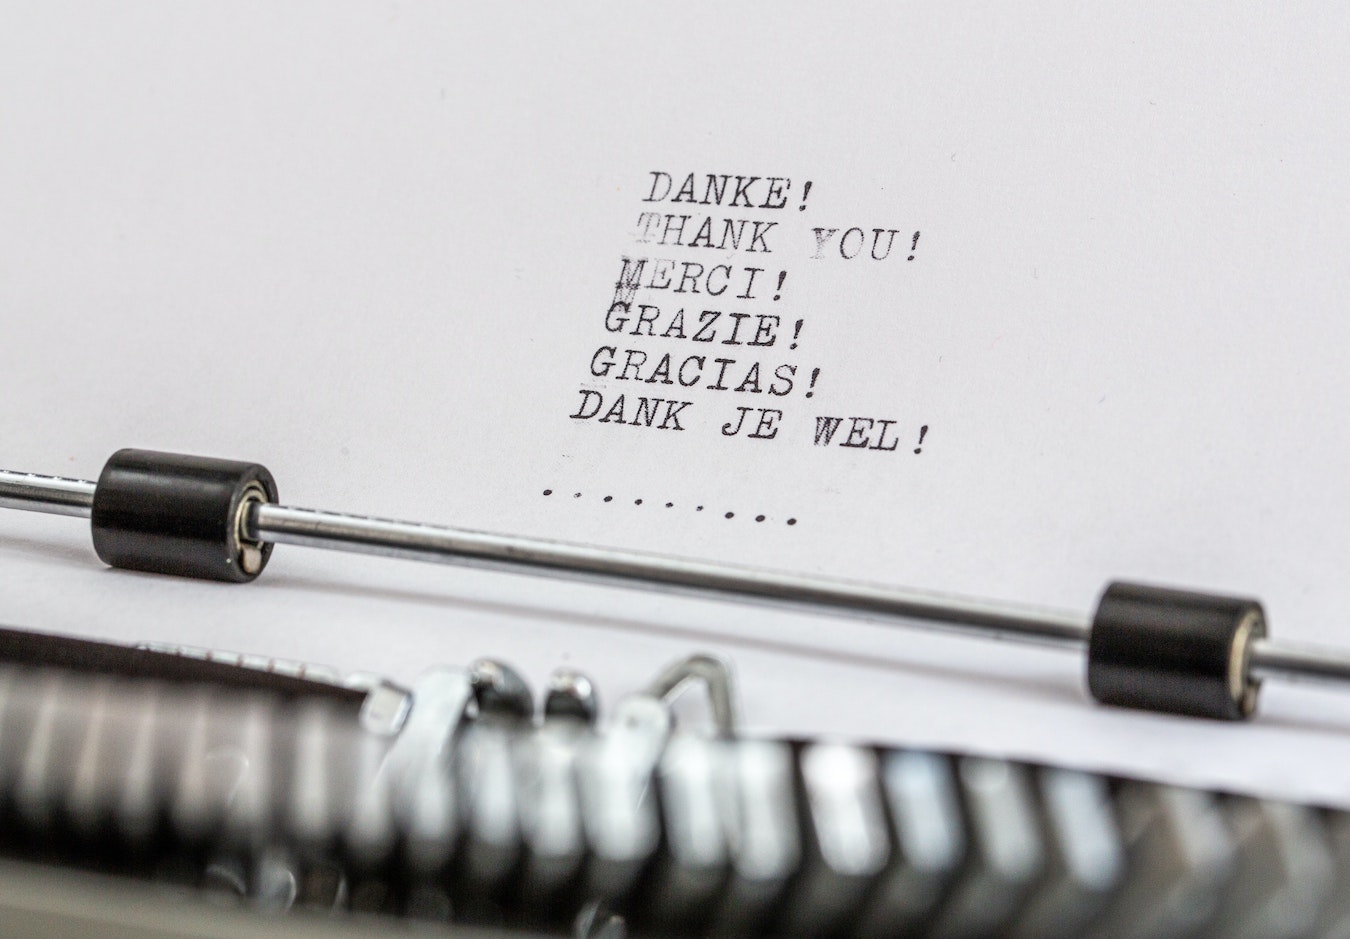 Schreibmaschine Text Danke in verschiedenen Sprachen Dankbarkeit gegen negative Gedanken